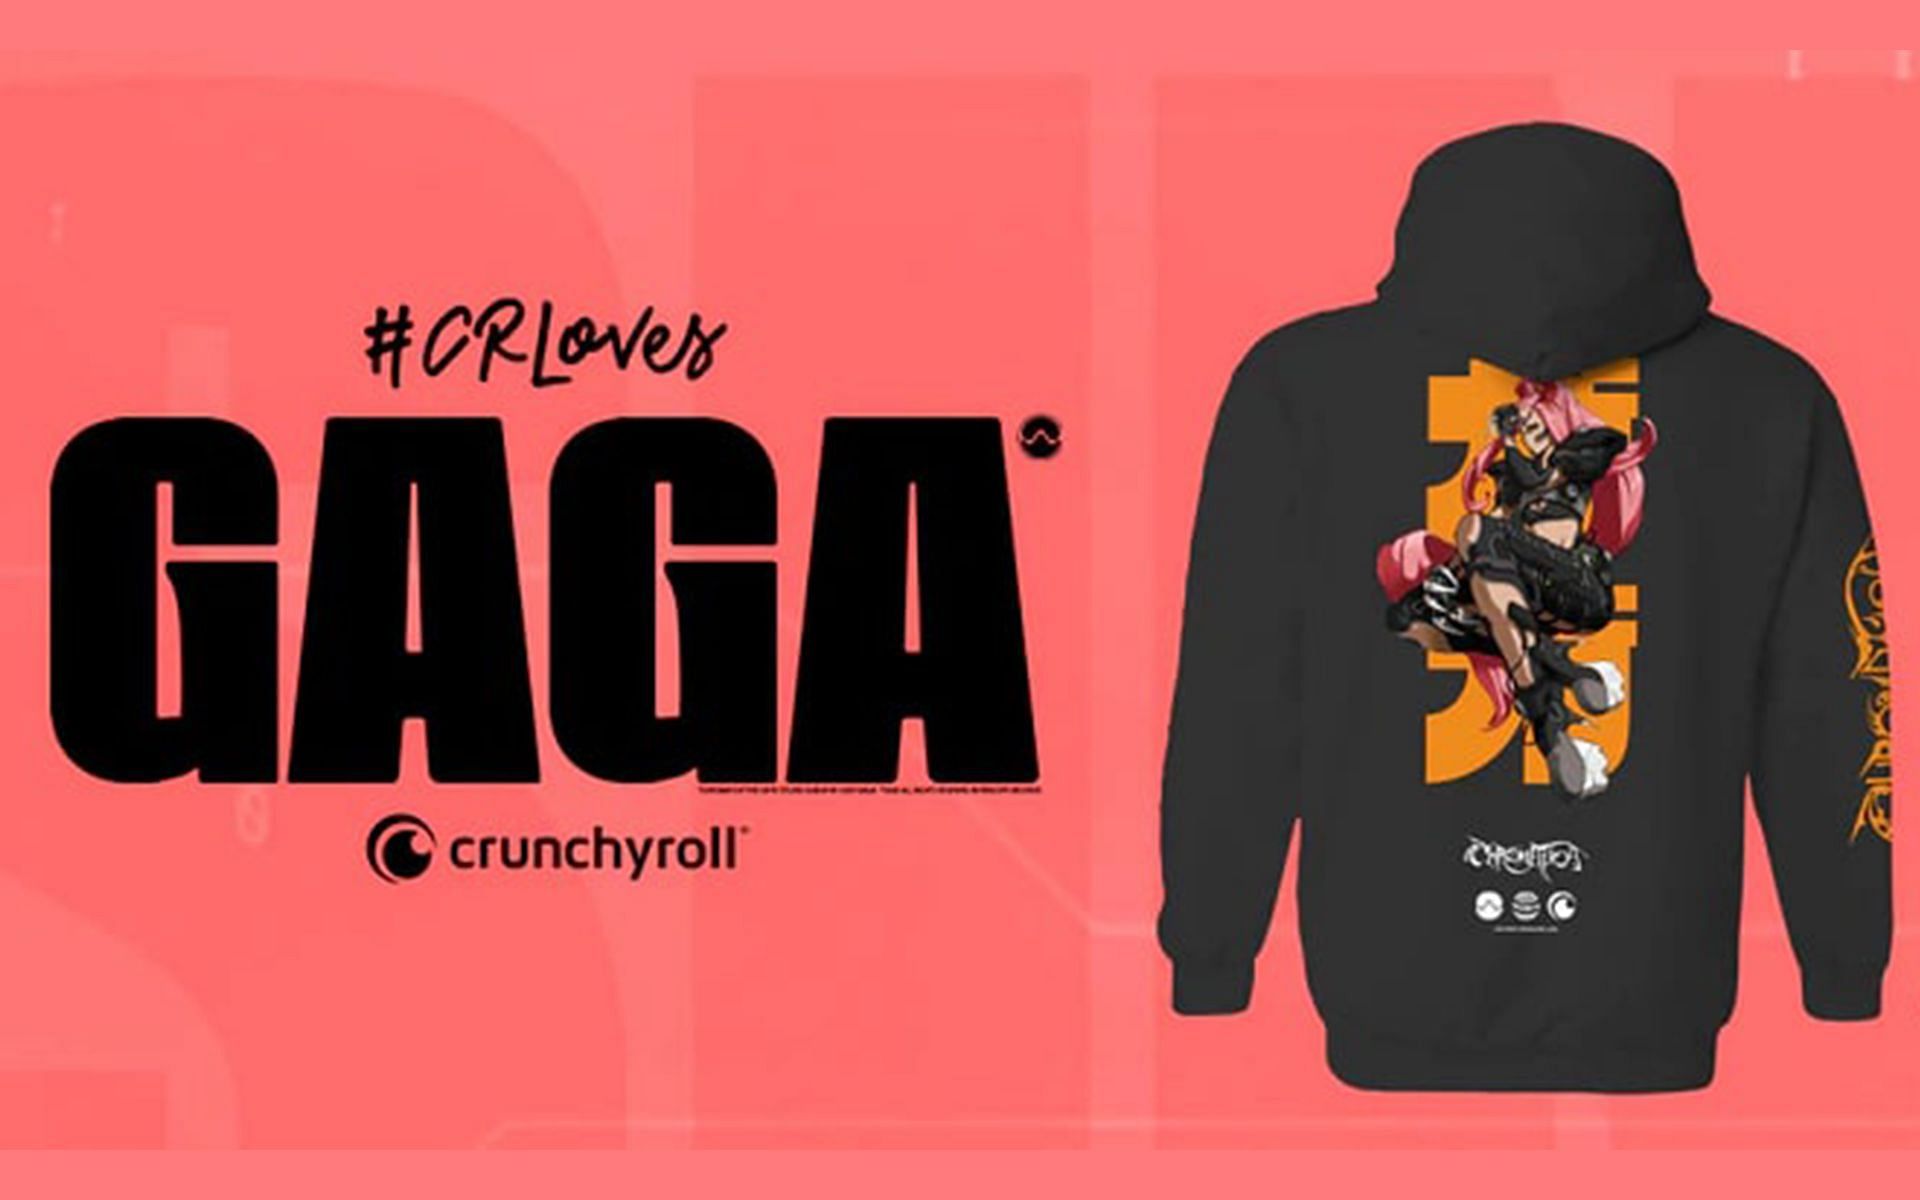 Lady Gaga x Crunchyroll merch drop (Image via Crunchyroll)